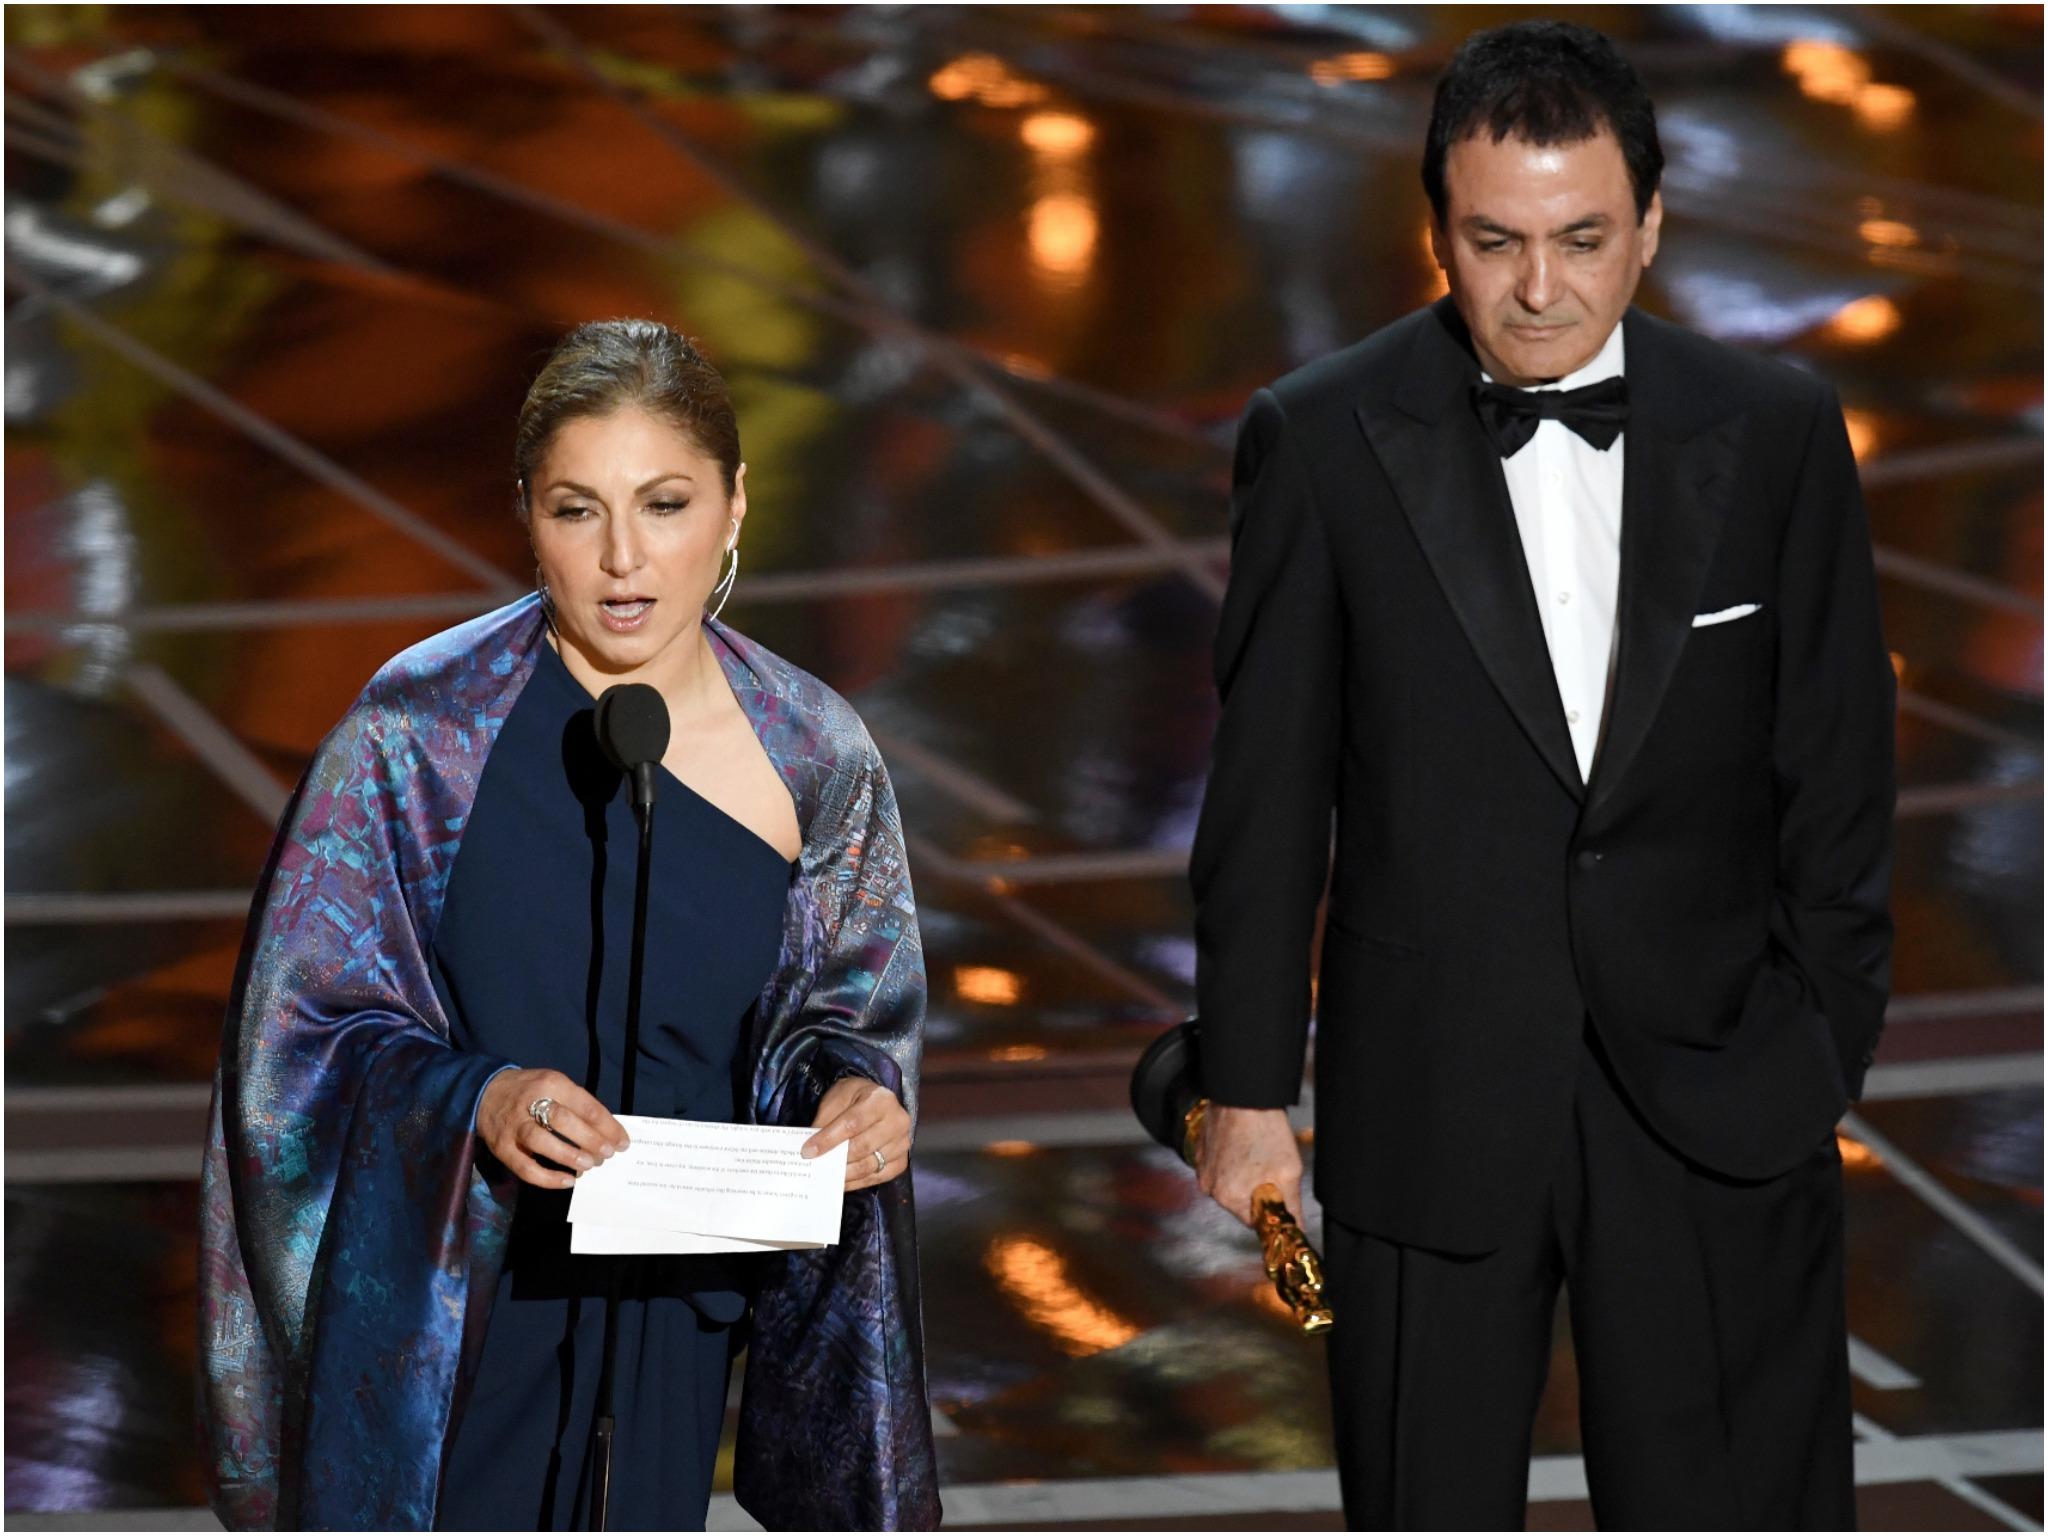 Anousheh Ansari at the Oscars